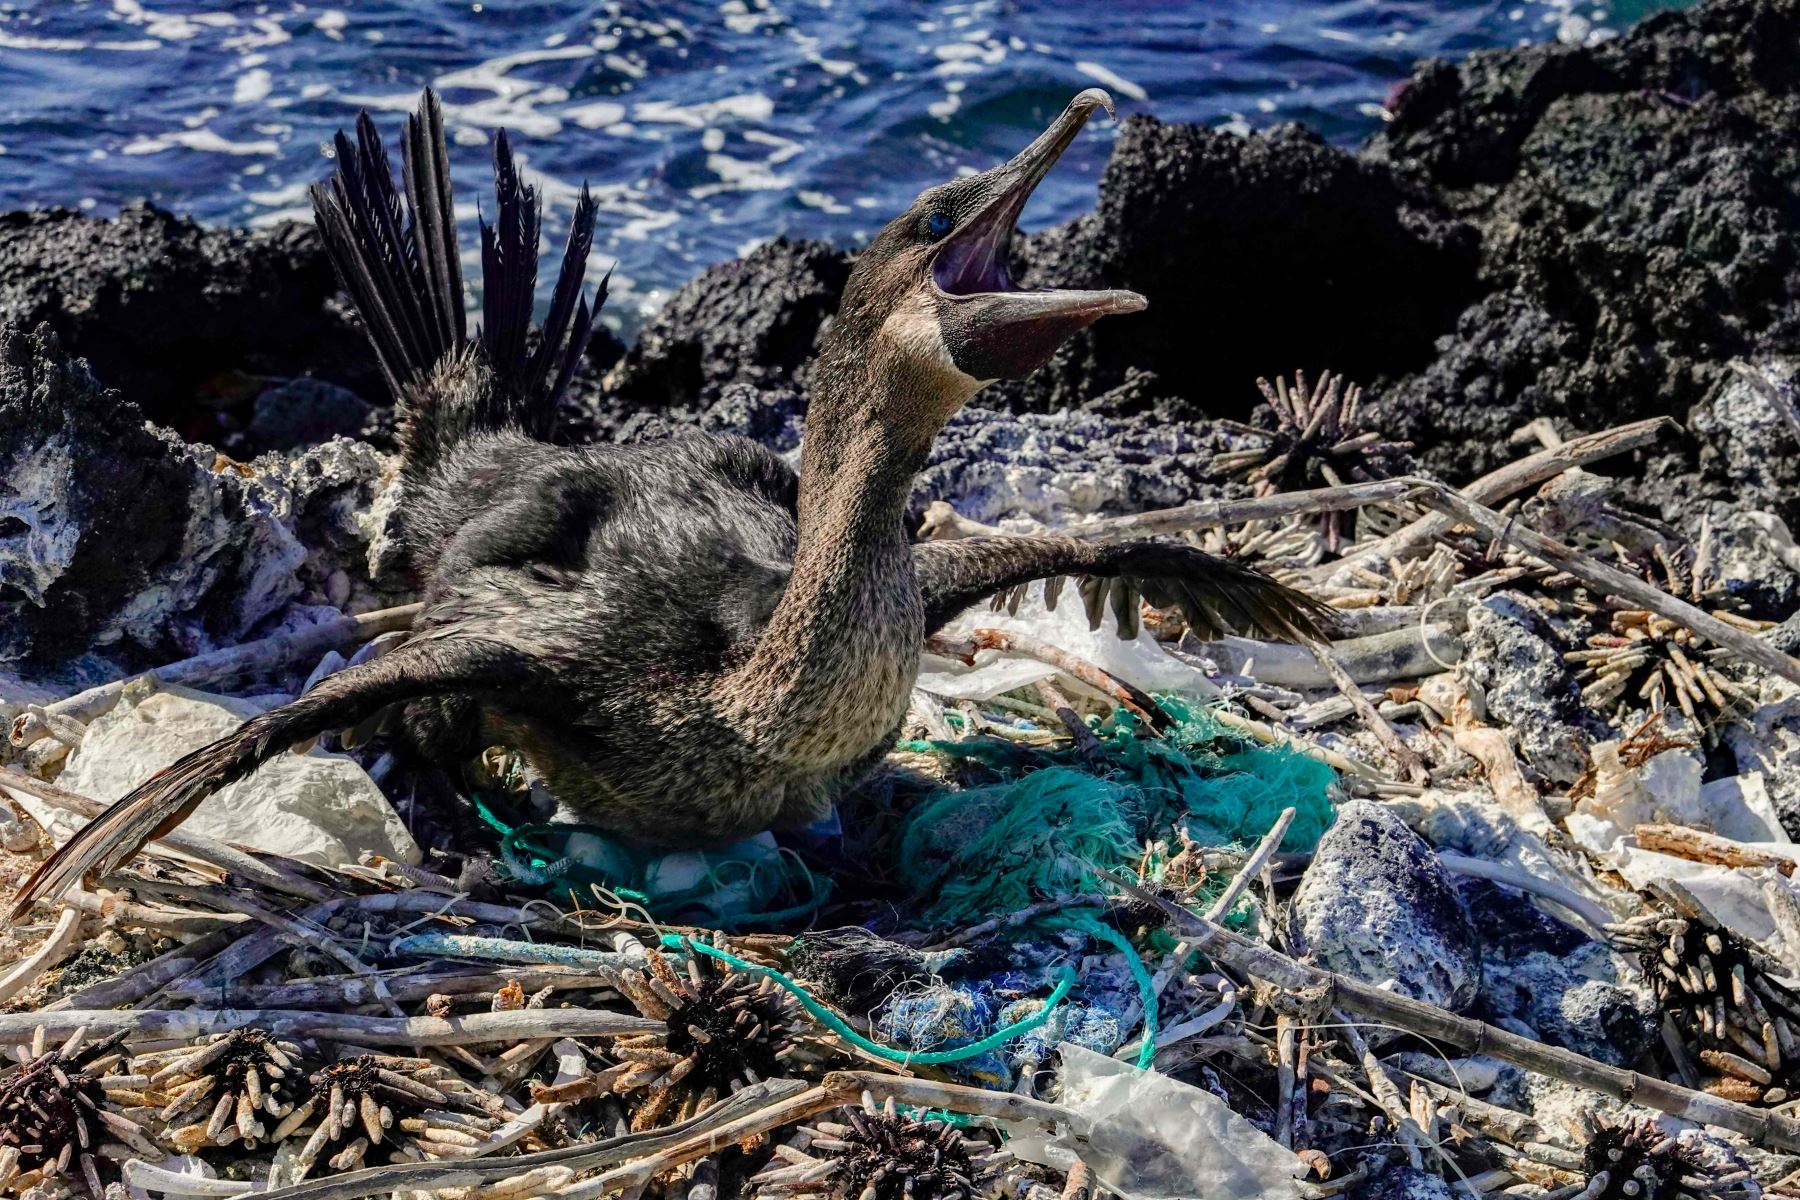 Un cormorán no volador (Nannopterum harrisi) se sienta en su nido rodeado de basura en la costa de la Isla Isabela en el archipiélago de las Galápagos en el Océano Pacífico, a 1000 km de la costa de Ecuador, el 21 de febrero de 2019. Foto: AFP